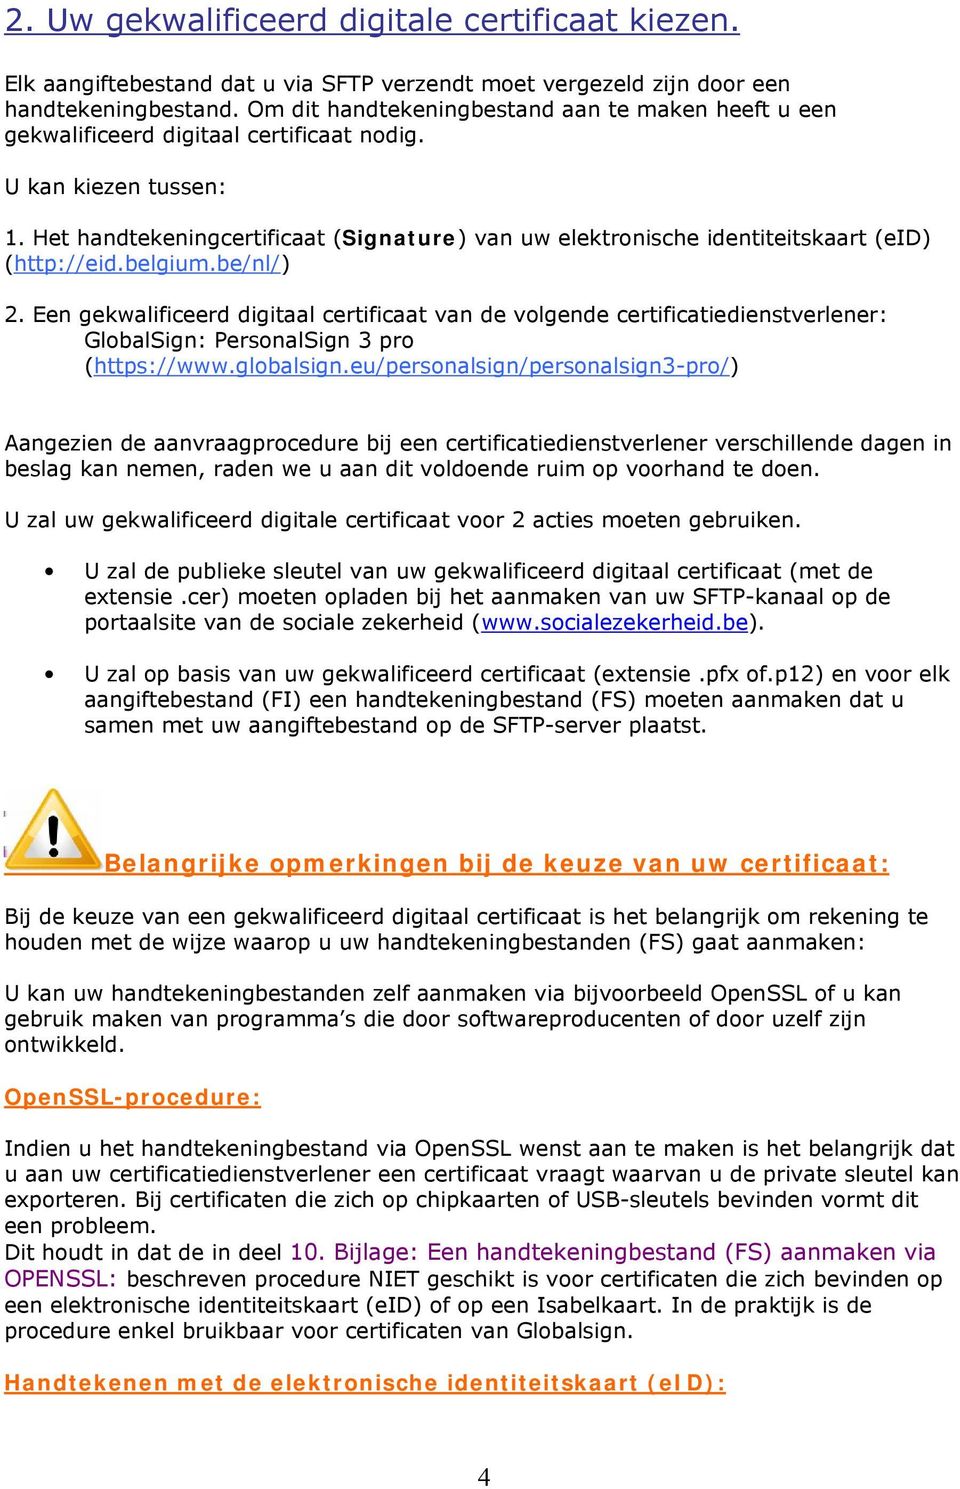 Het handtekeningcertificaat (Signature) van uw elektronische identiteitskaart (eid) (http://eid.belgium.be/nl/) 2.